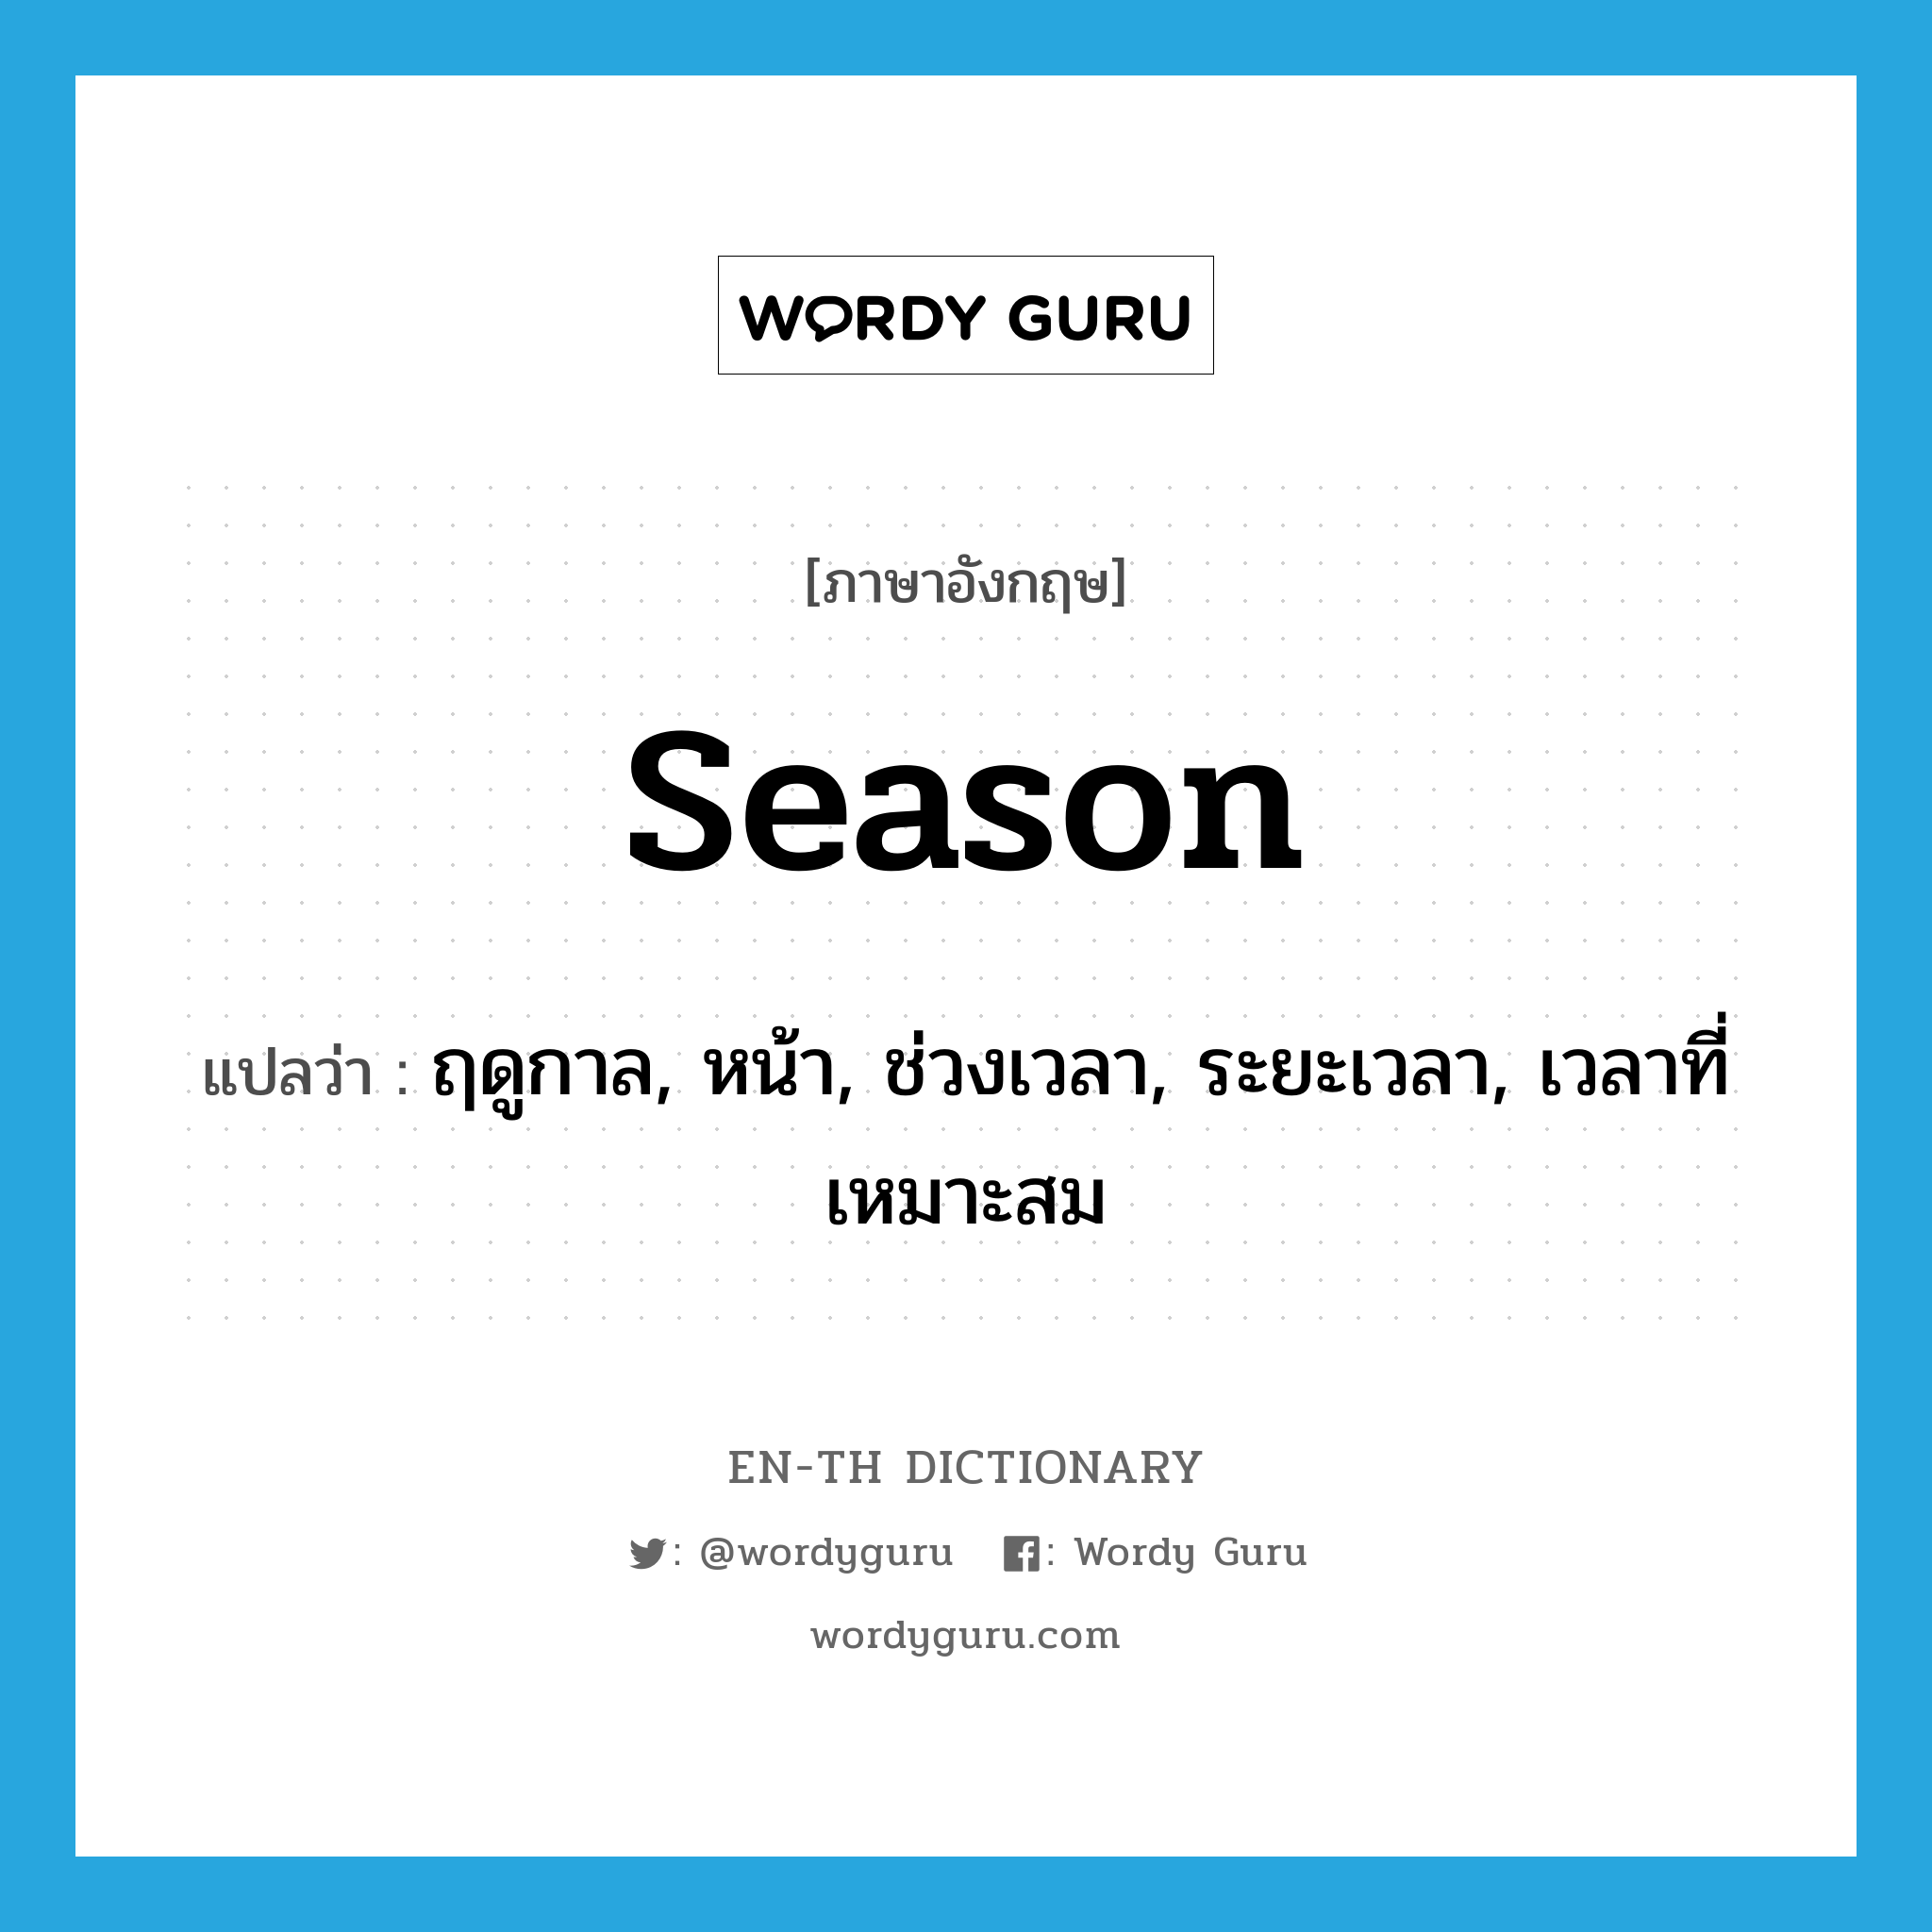 season แปลว่า?, คำศัพท์ภาษาอังกฤษ season แปลว่า ฤดูกาล, หน้า, ช่วงเวลา, ระยะเวลา, เวลาที่เหมาะสม ประเภท N หมวด N